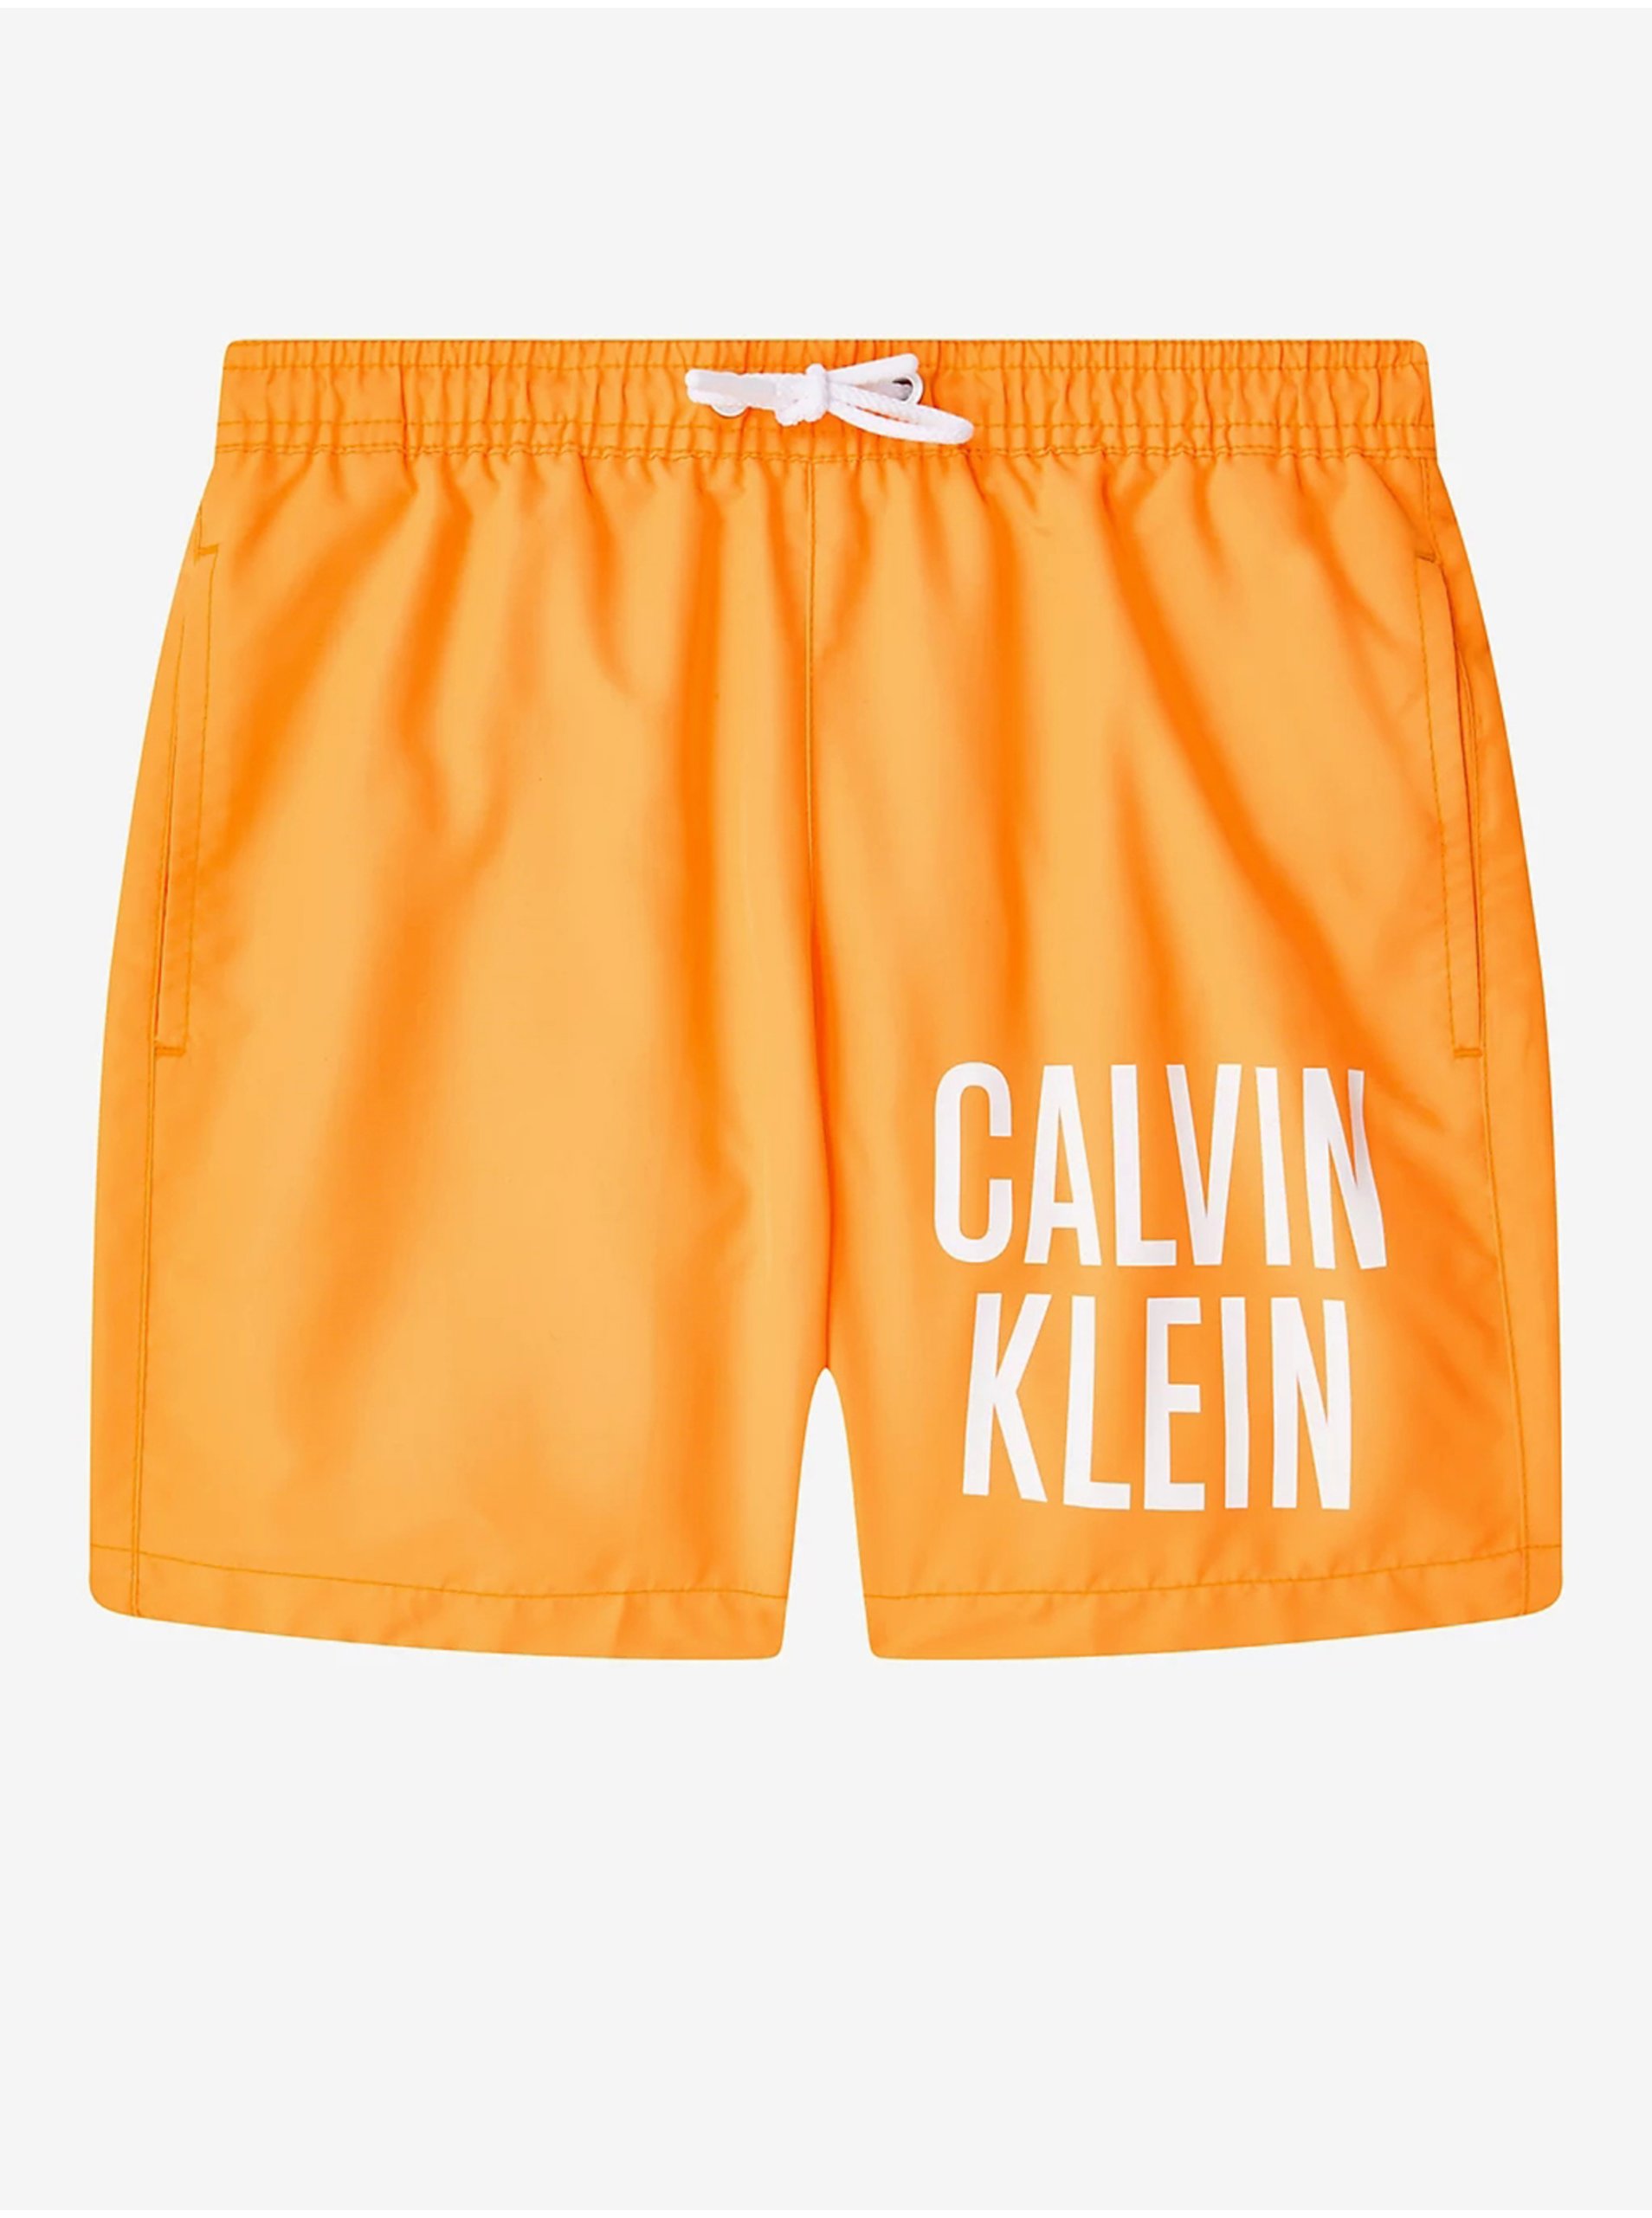 Lacno Oranžové chlapčenské plavky Calvin Klein